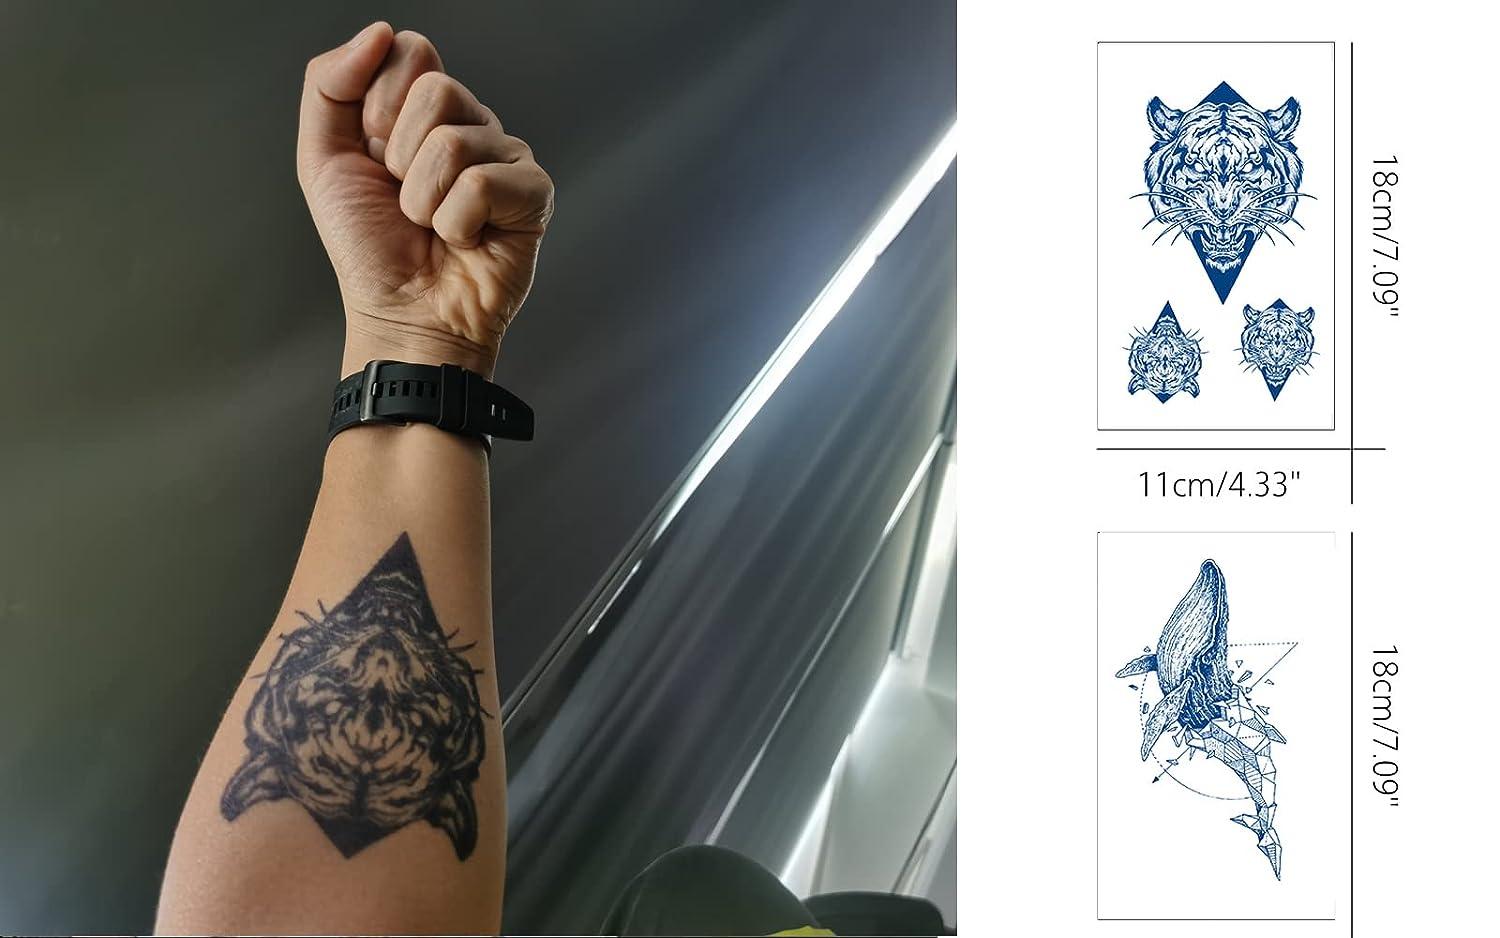 30+ Best Arrow Tattoo Design Ideas For Both Women And Men (2021 Updated) | Arrow  tattoos, Arrow tattoos for women, Arrow tattoo design